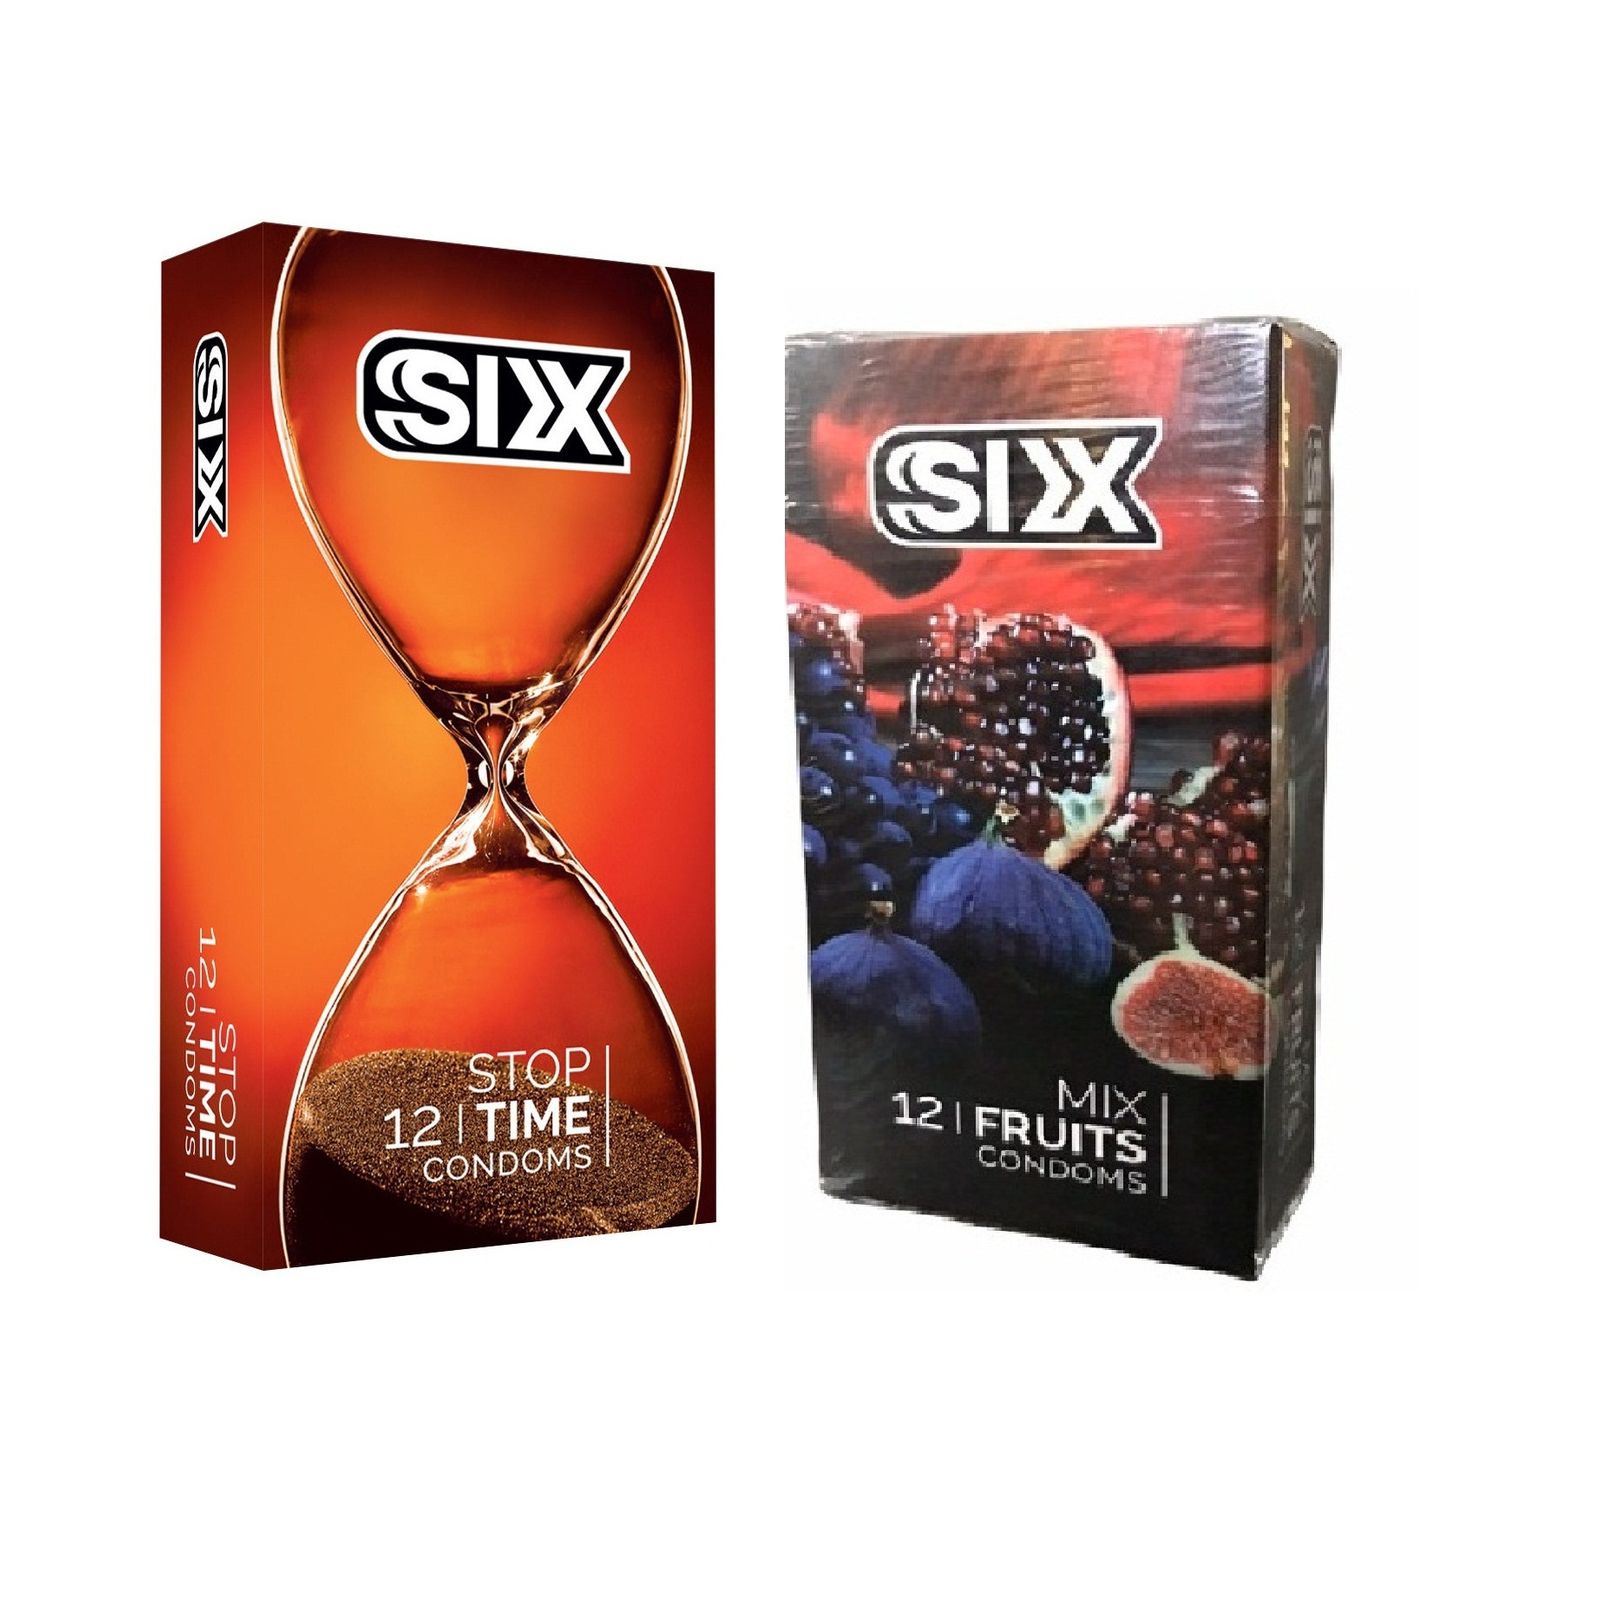 کاندوم سیکس مدل Stop Time بسته 12 عددی به همراه کاندوم سیکس مدل Mix Fruits بسته 12 عددی -  - 2